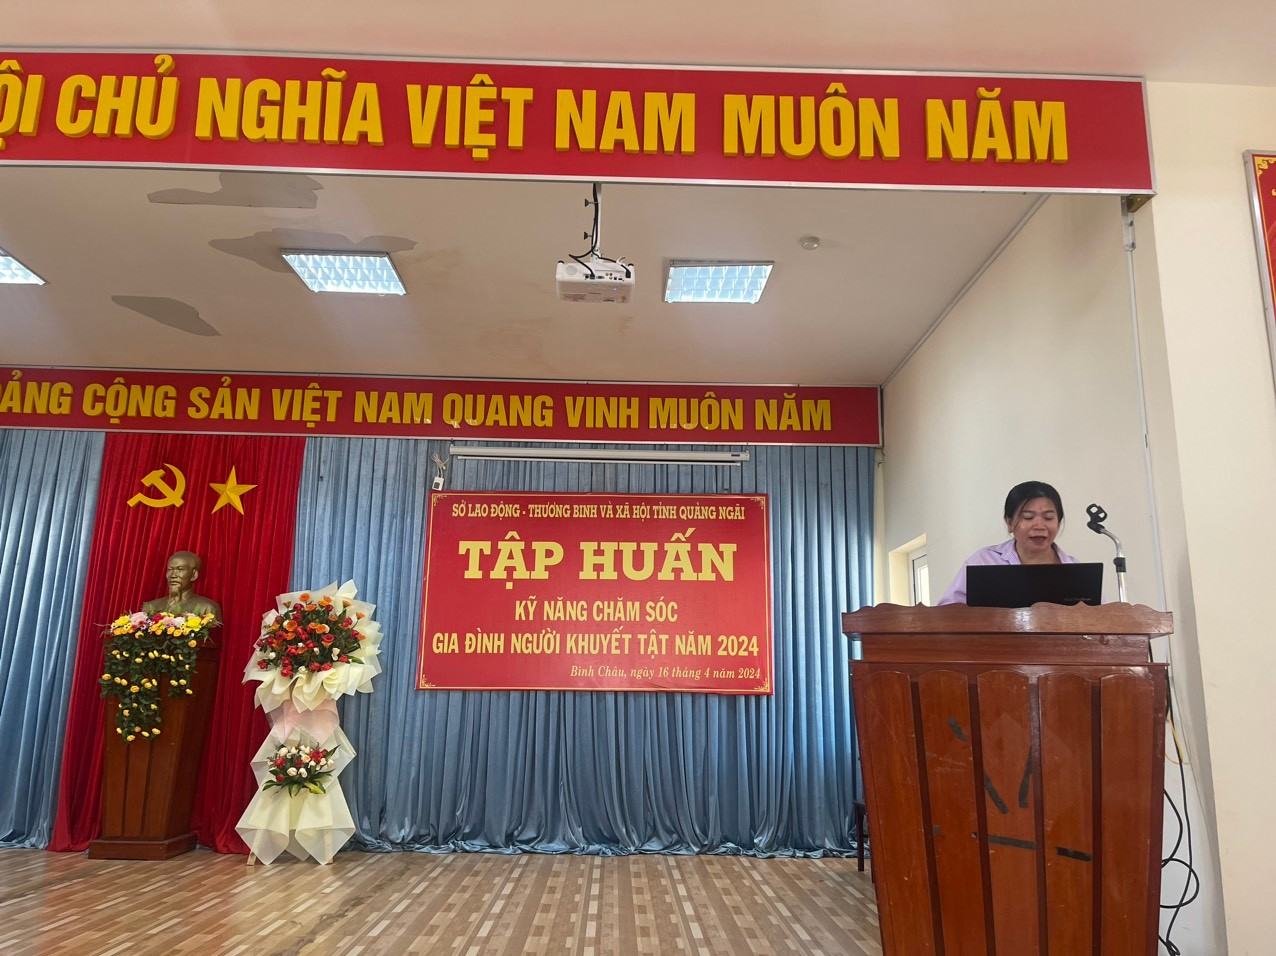 Báo cáo viên Bác sĩ Nguyễn Thị Hoài Tâm – Trung tâm Công tác xã hội tỉnh 